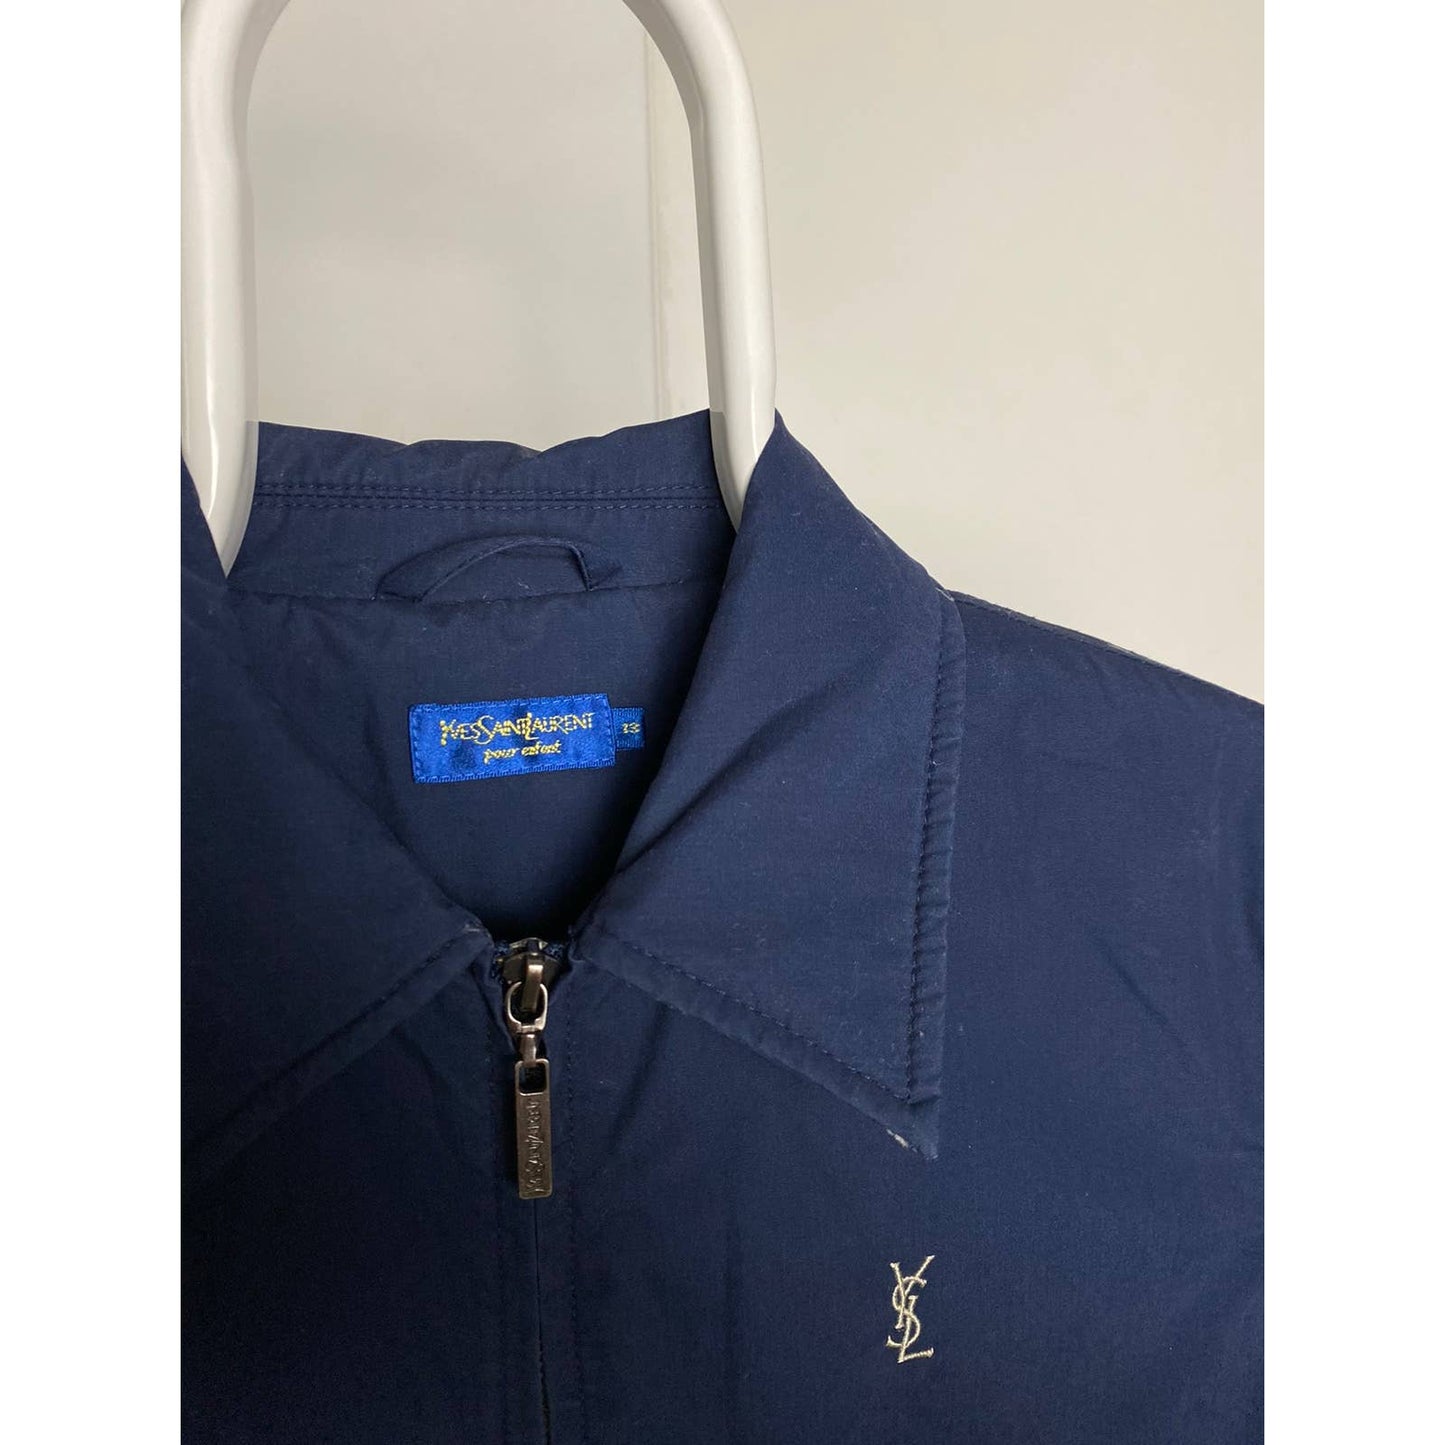 Yves Saint Laurent vintage Harrington jacket navy YSL logo